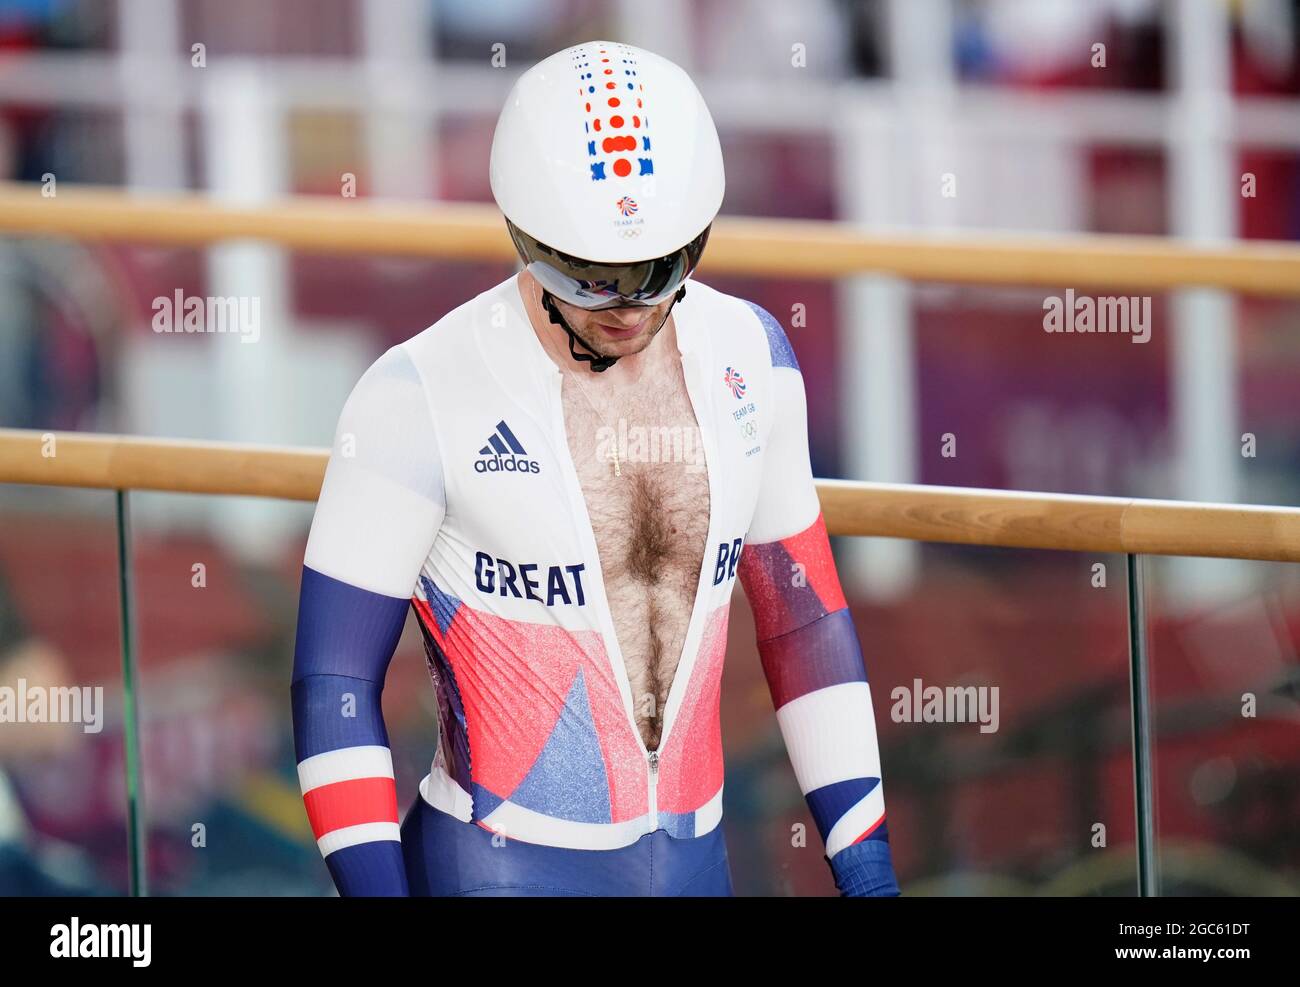 Jason Kenny, en Grande-Bretagne, pendant le premier tour des hommes de Keirin au vélodrome d'Izu, le quinzième jour des Jeux Olympiques de Tokyo en 2020 au Japon. Date de la photo: Samedi 7 août 2021. Banque D'Images